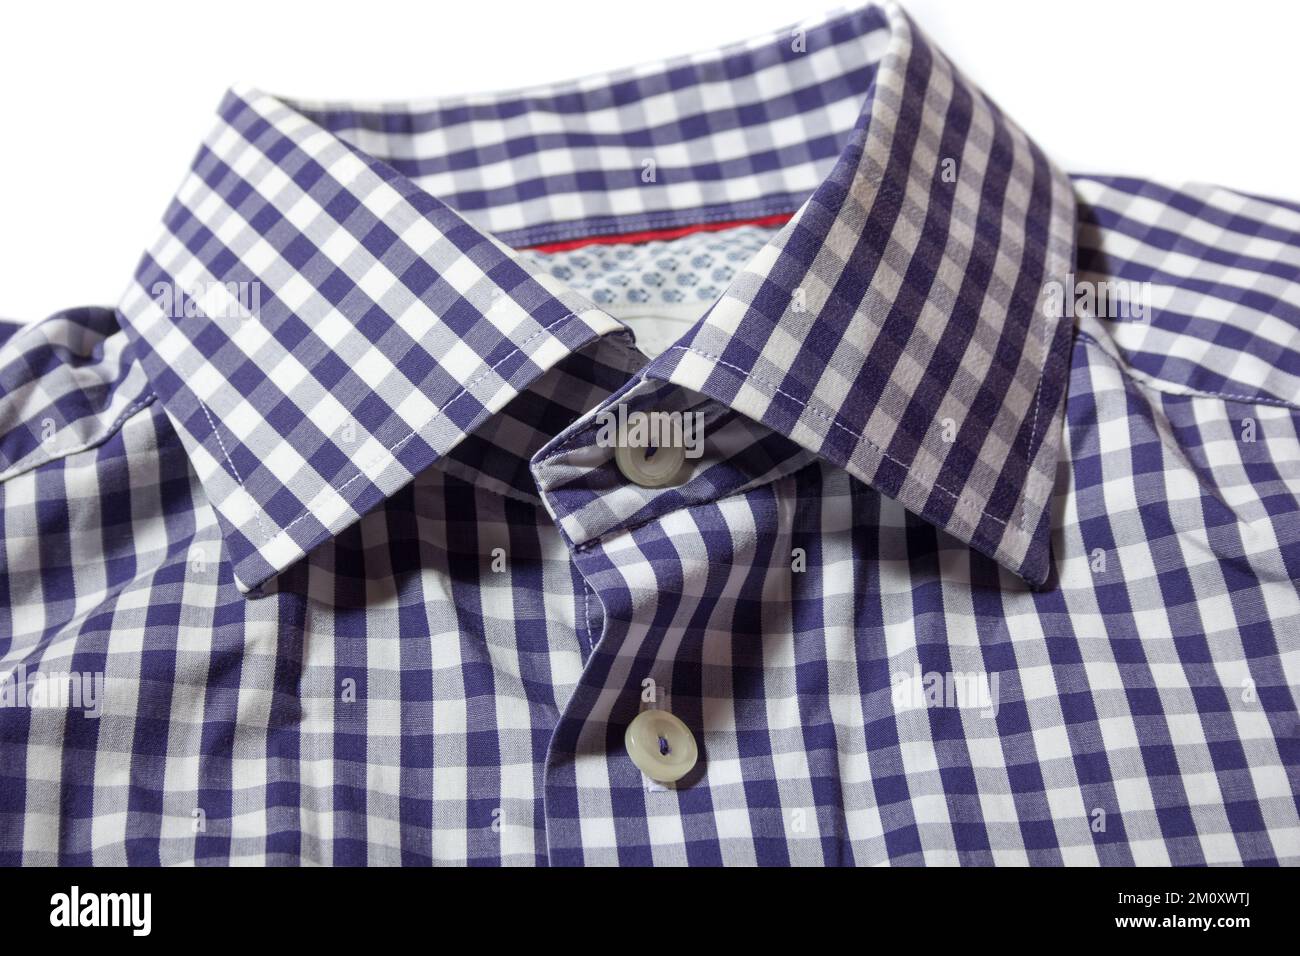 Classic men's dress shirt collar. Stock Photo